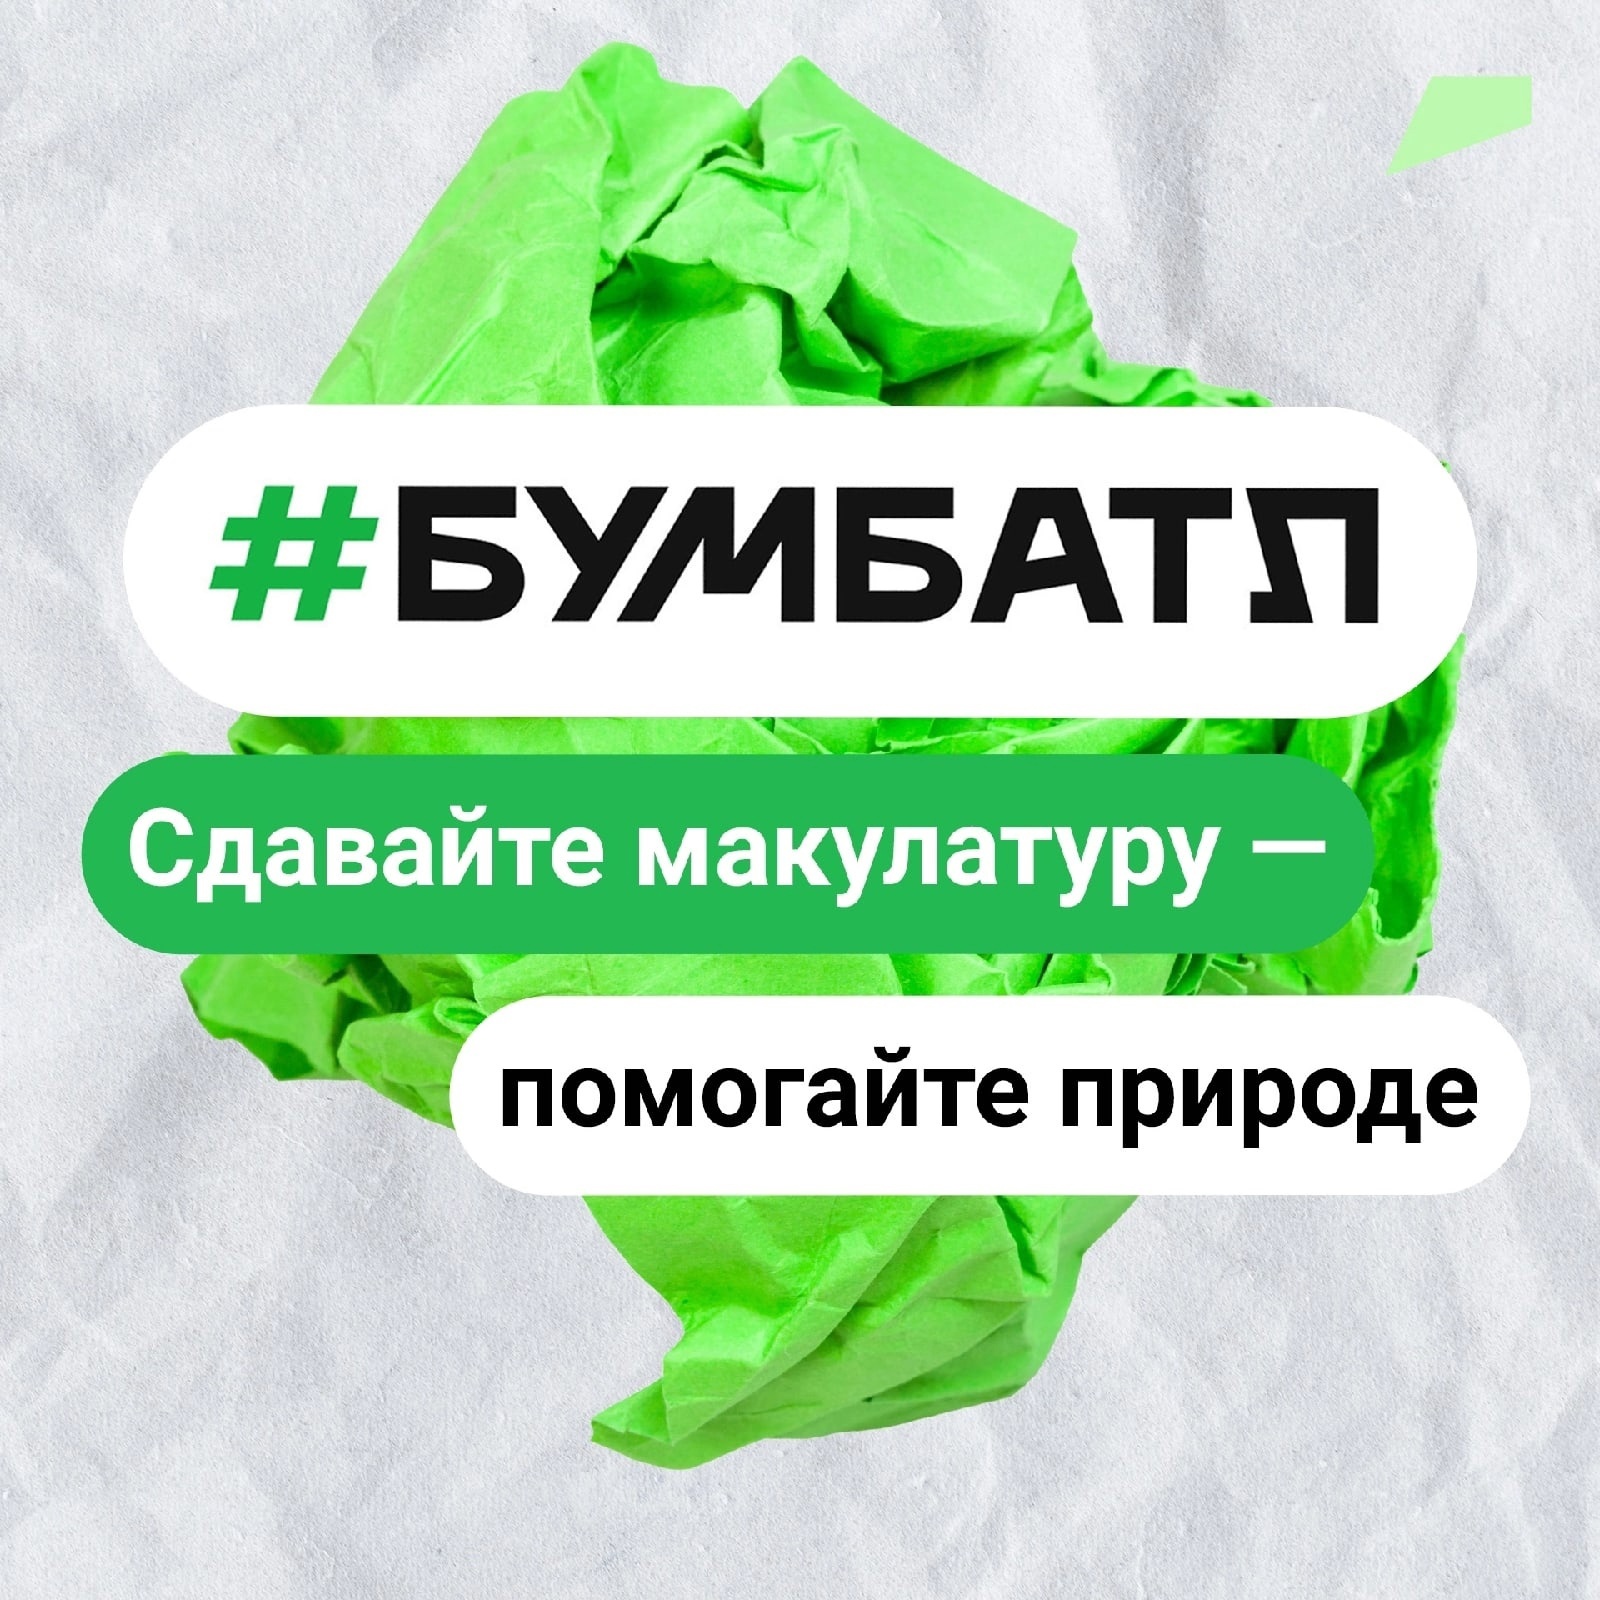 С 15 сентября 2022 года по 15 ноября 2022 года на территории Белгородской области проводится Всероссийская акция по сбору макулатуры #БУМБАТЛ.